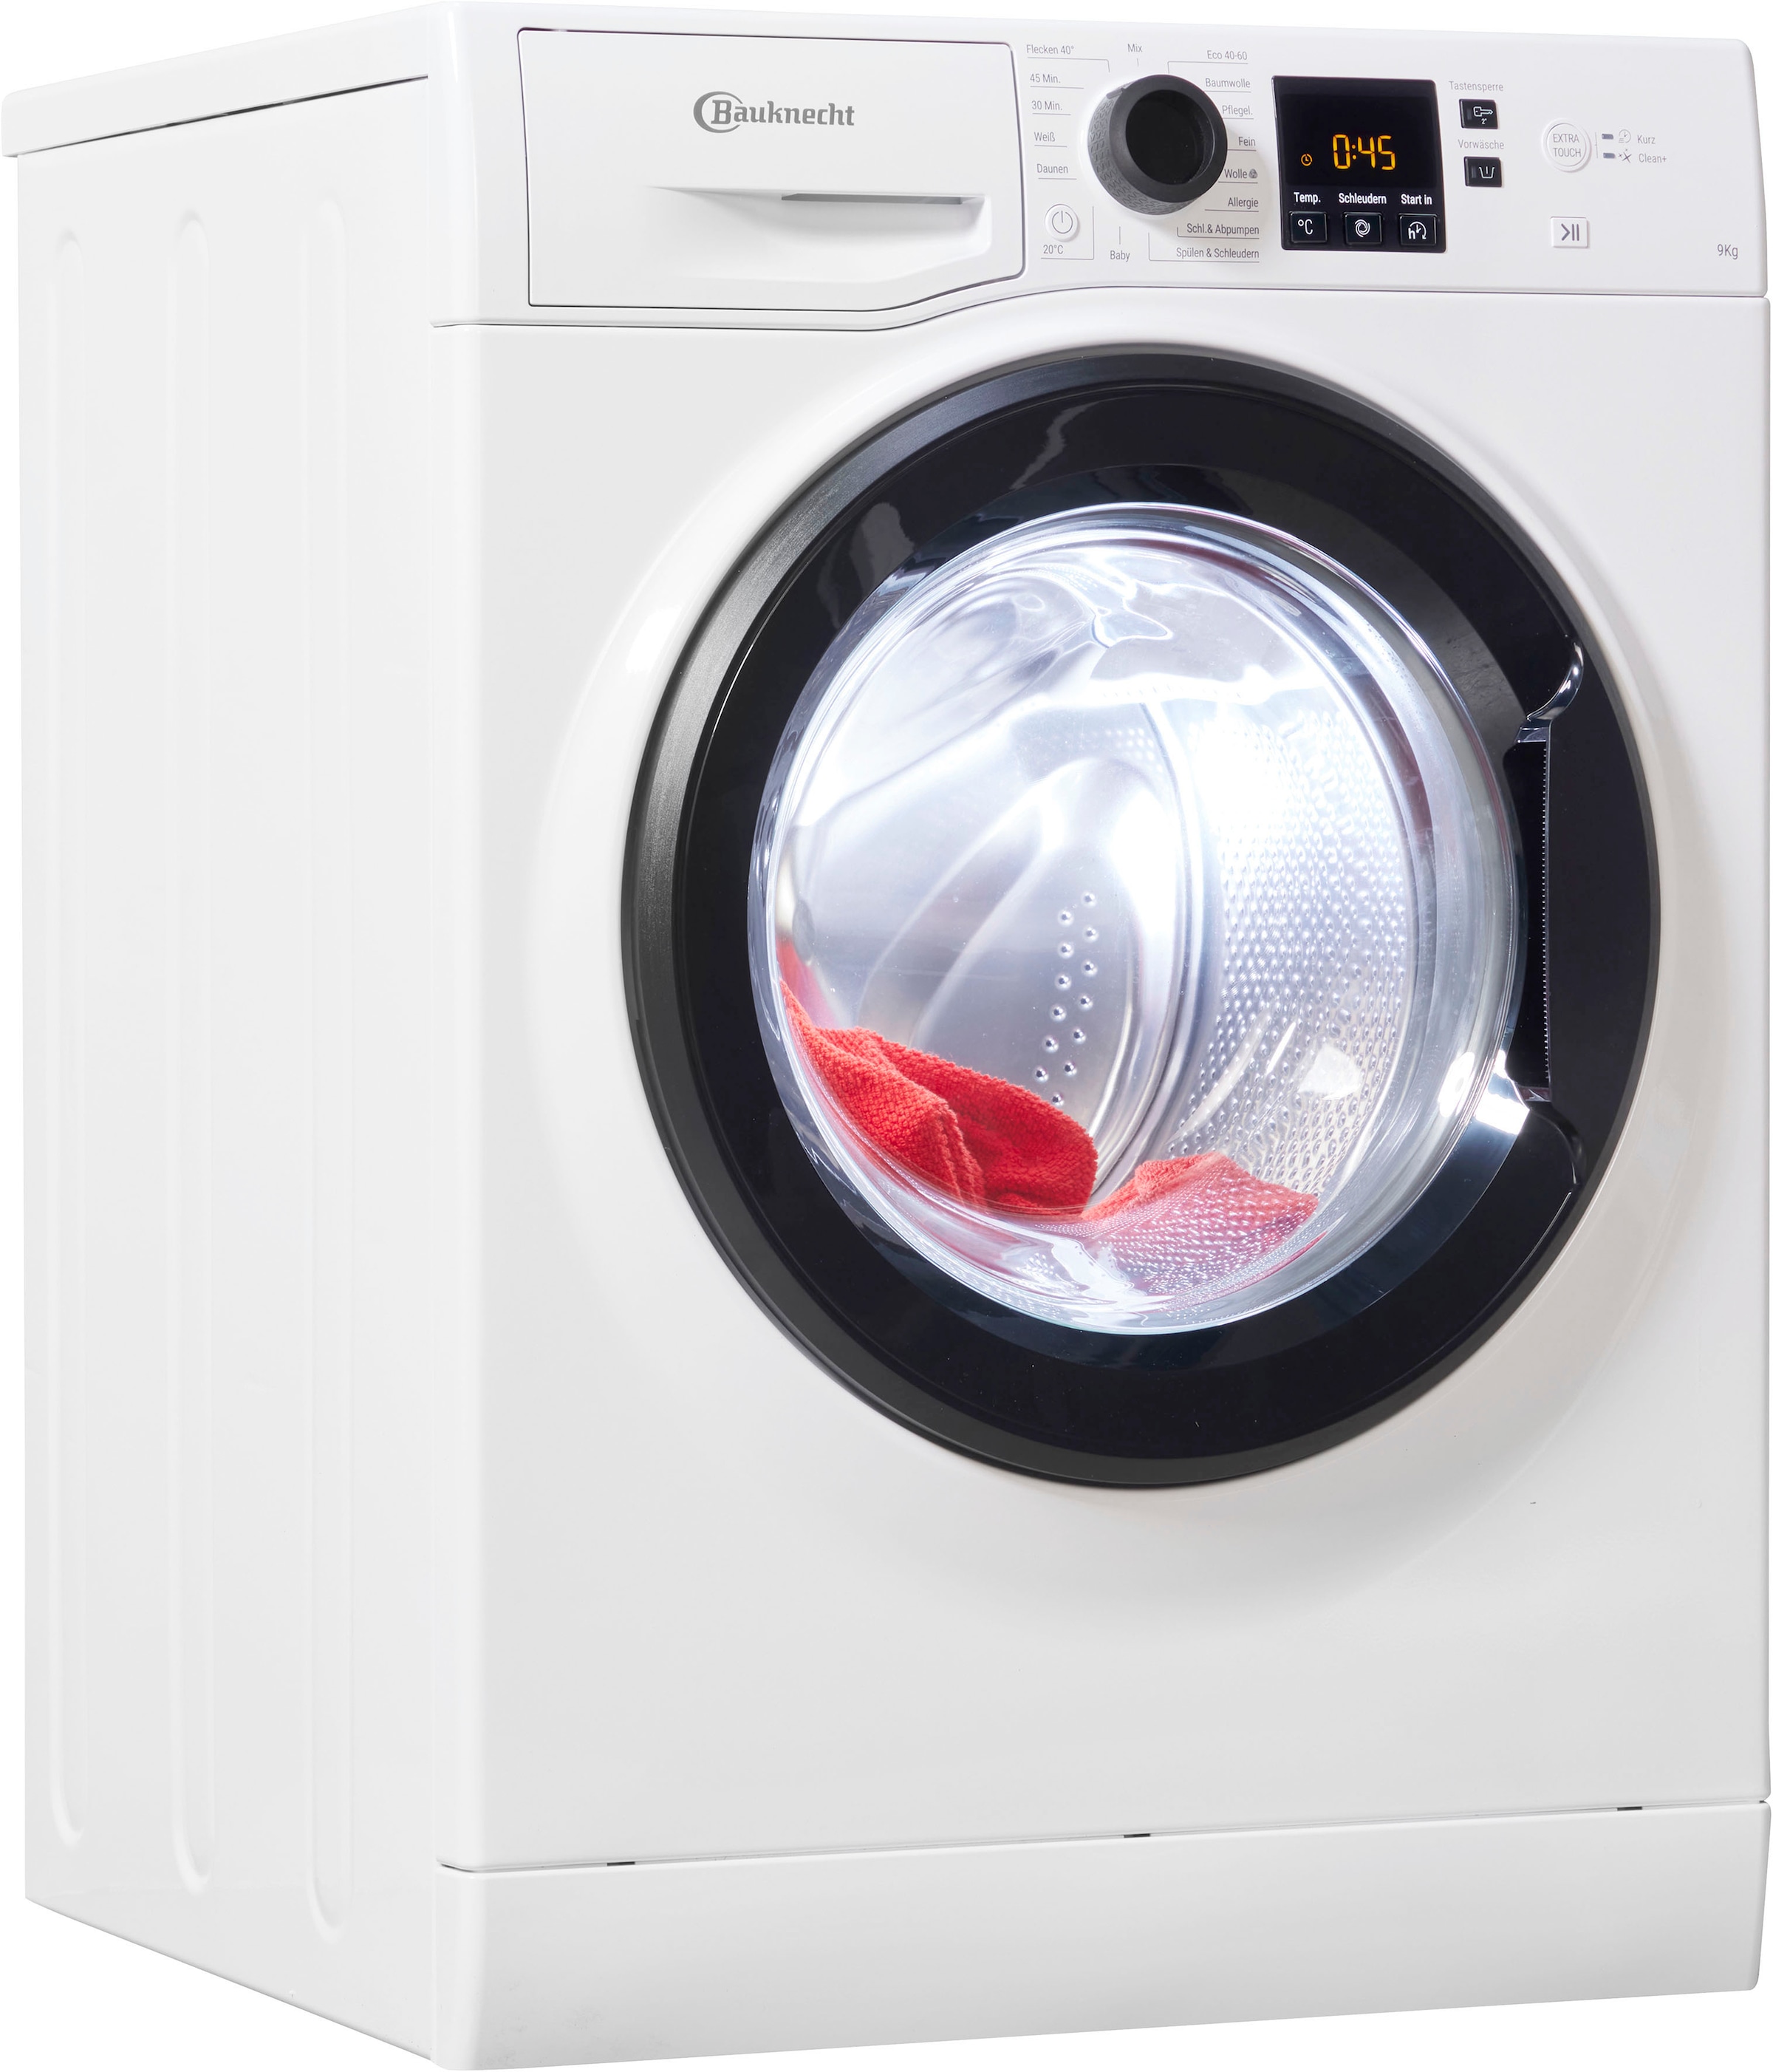 4 BAUKNECHT kg, 9 Eco 1400 U/min, OTTO A, 945 Shop Online Herstellergarantie Waschmaschine, Super jetzt im Jahre